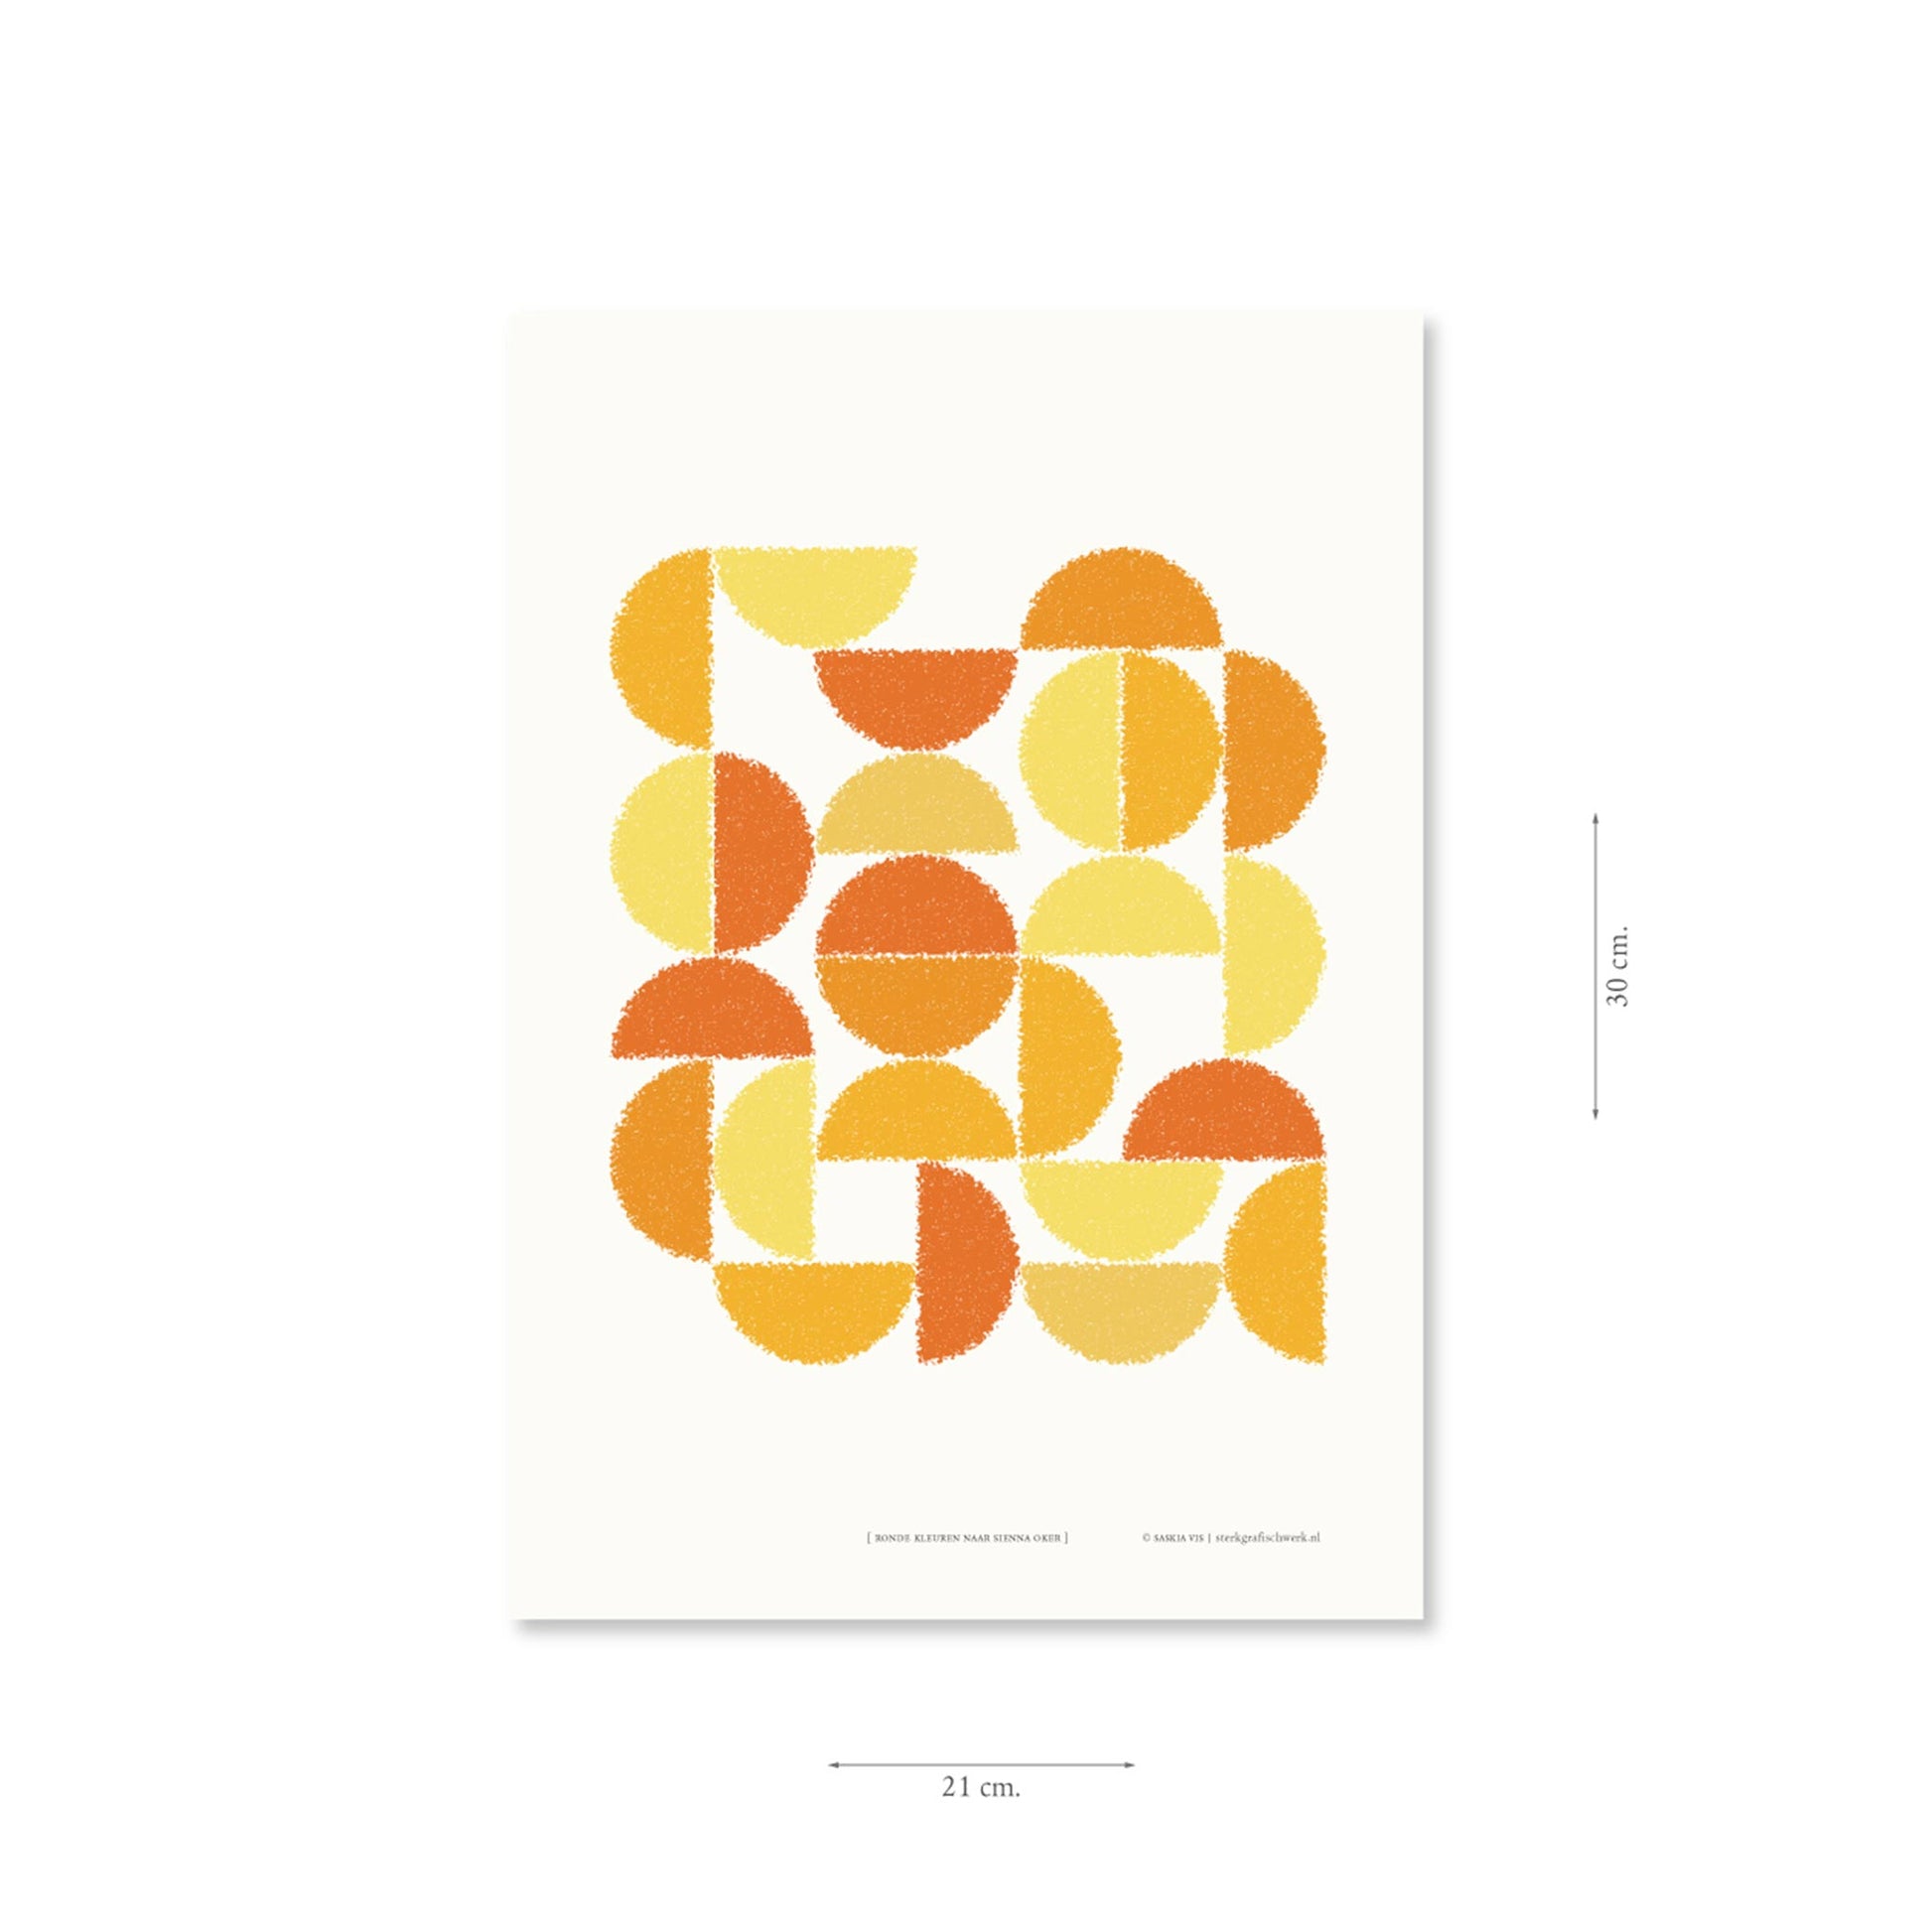 Productafbeelding poster "ronde kleuren naar sienna oker" met aanduiding van het formaat erop weergegeven 21 x 30 cm